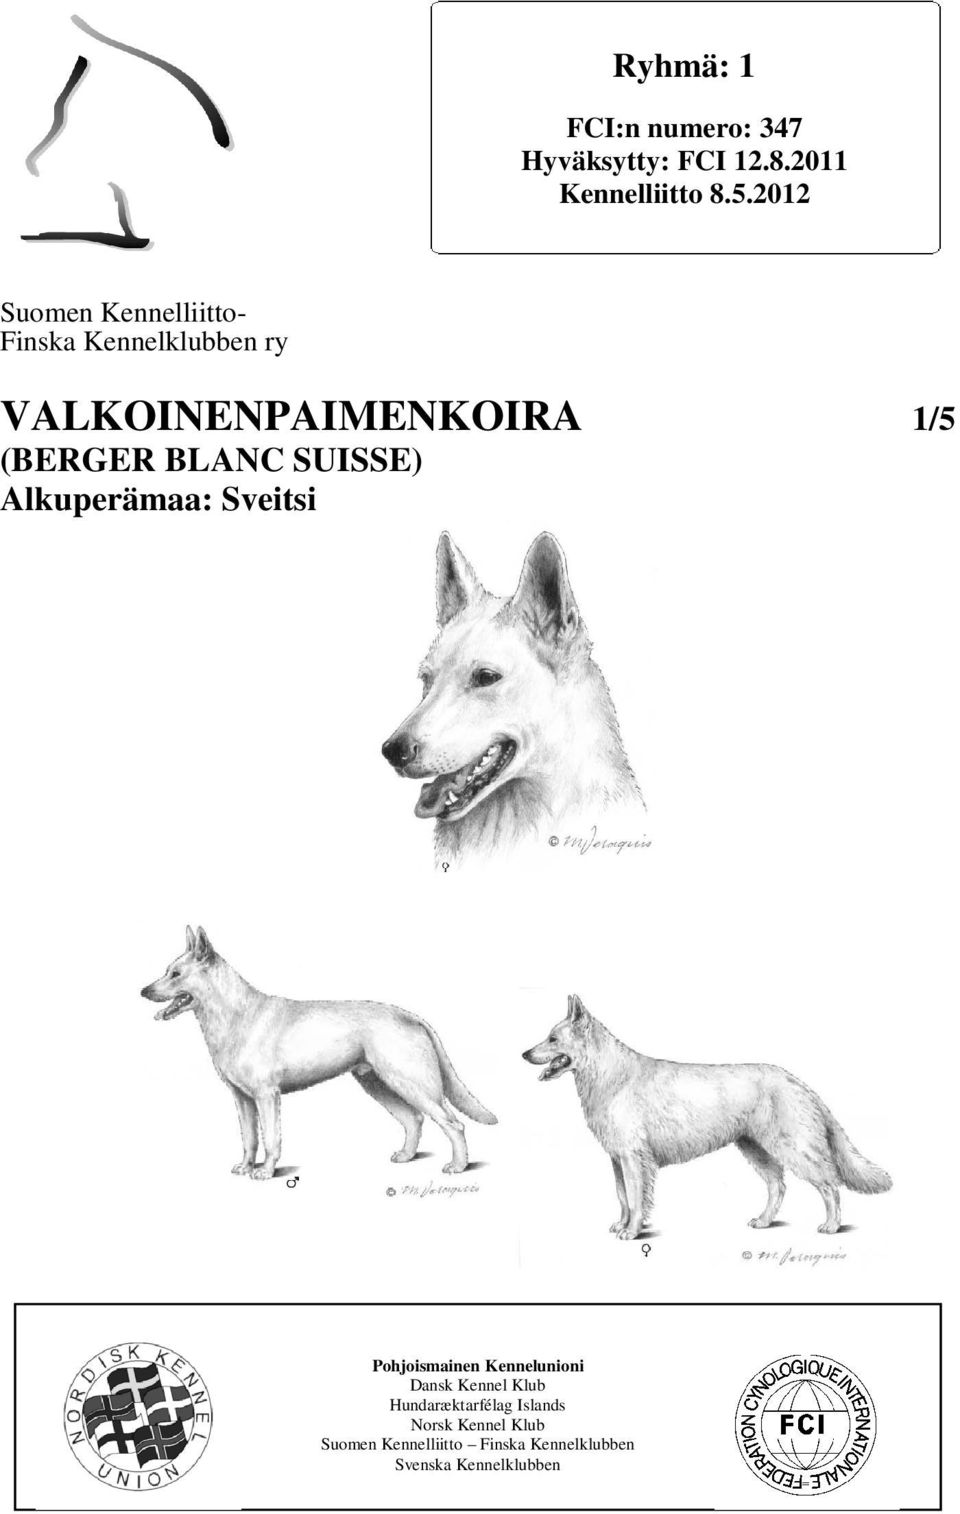 BLANC SUISSE) Alkuperämaa: Sveitsi Pohjoismainen Kennelunioni Dansk Kennel Klub